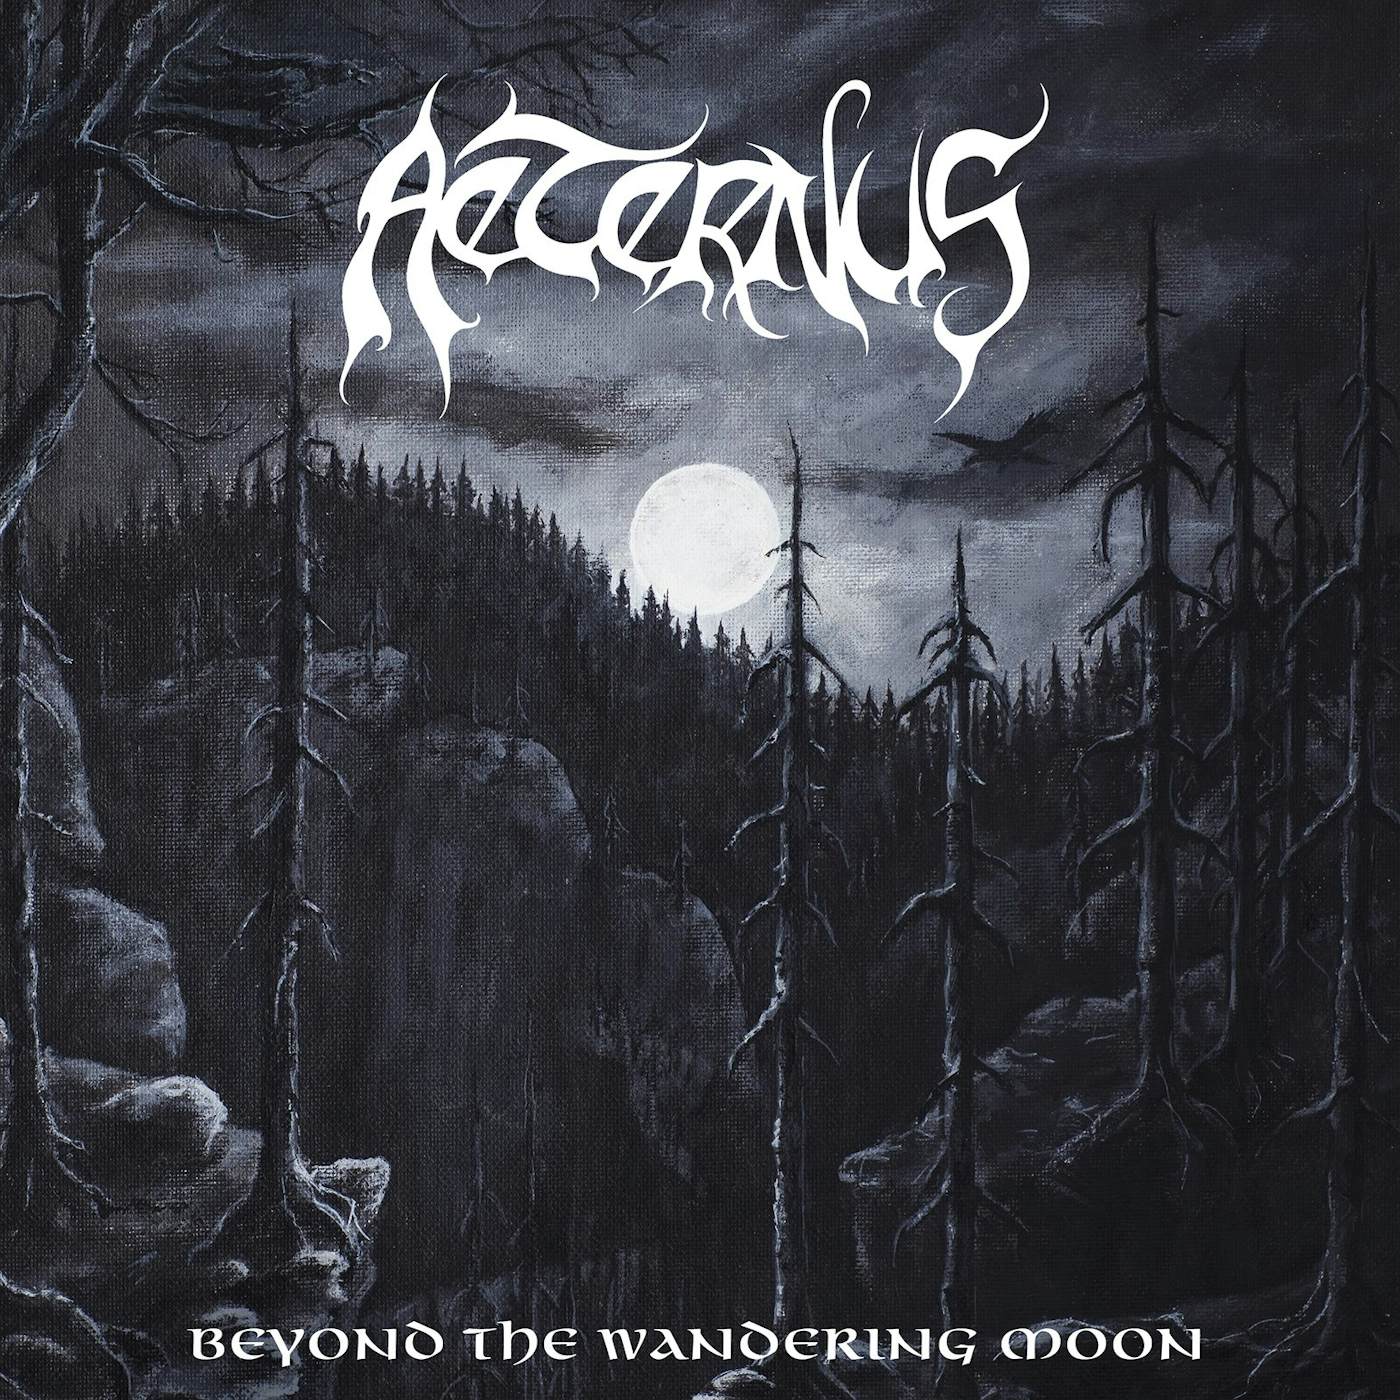 Aeternus "Beyond the wandering moon (black vinyl)" Limited Edition 2x12"